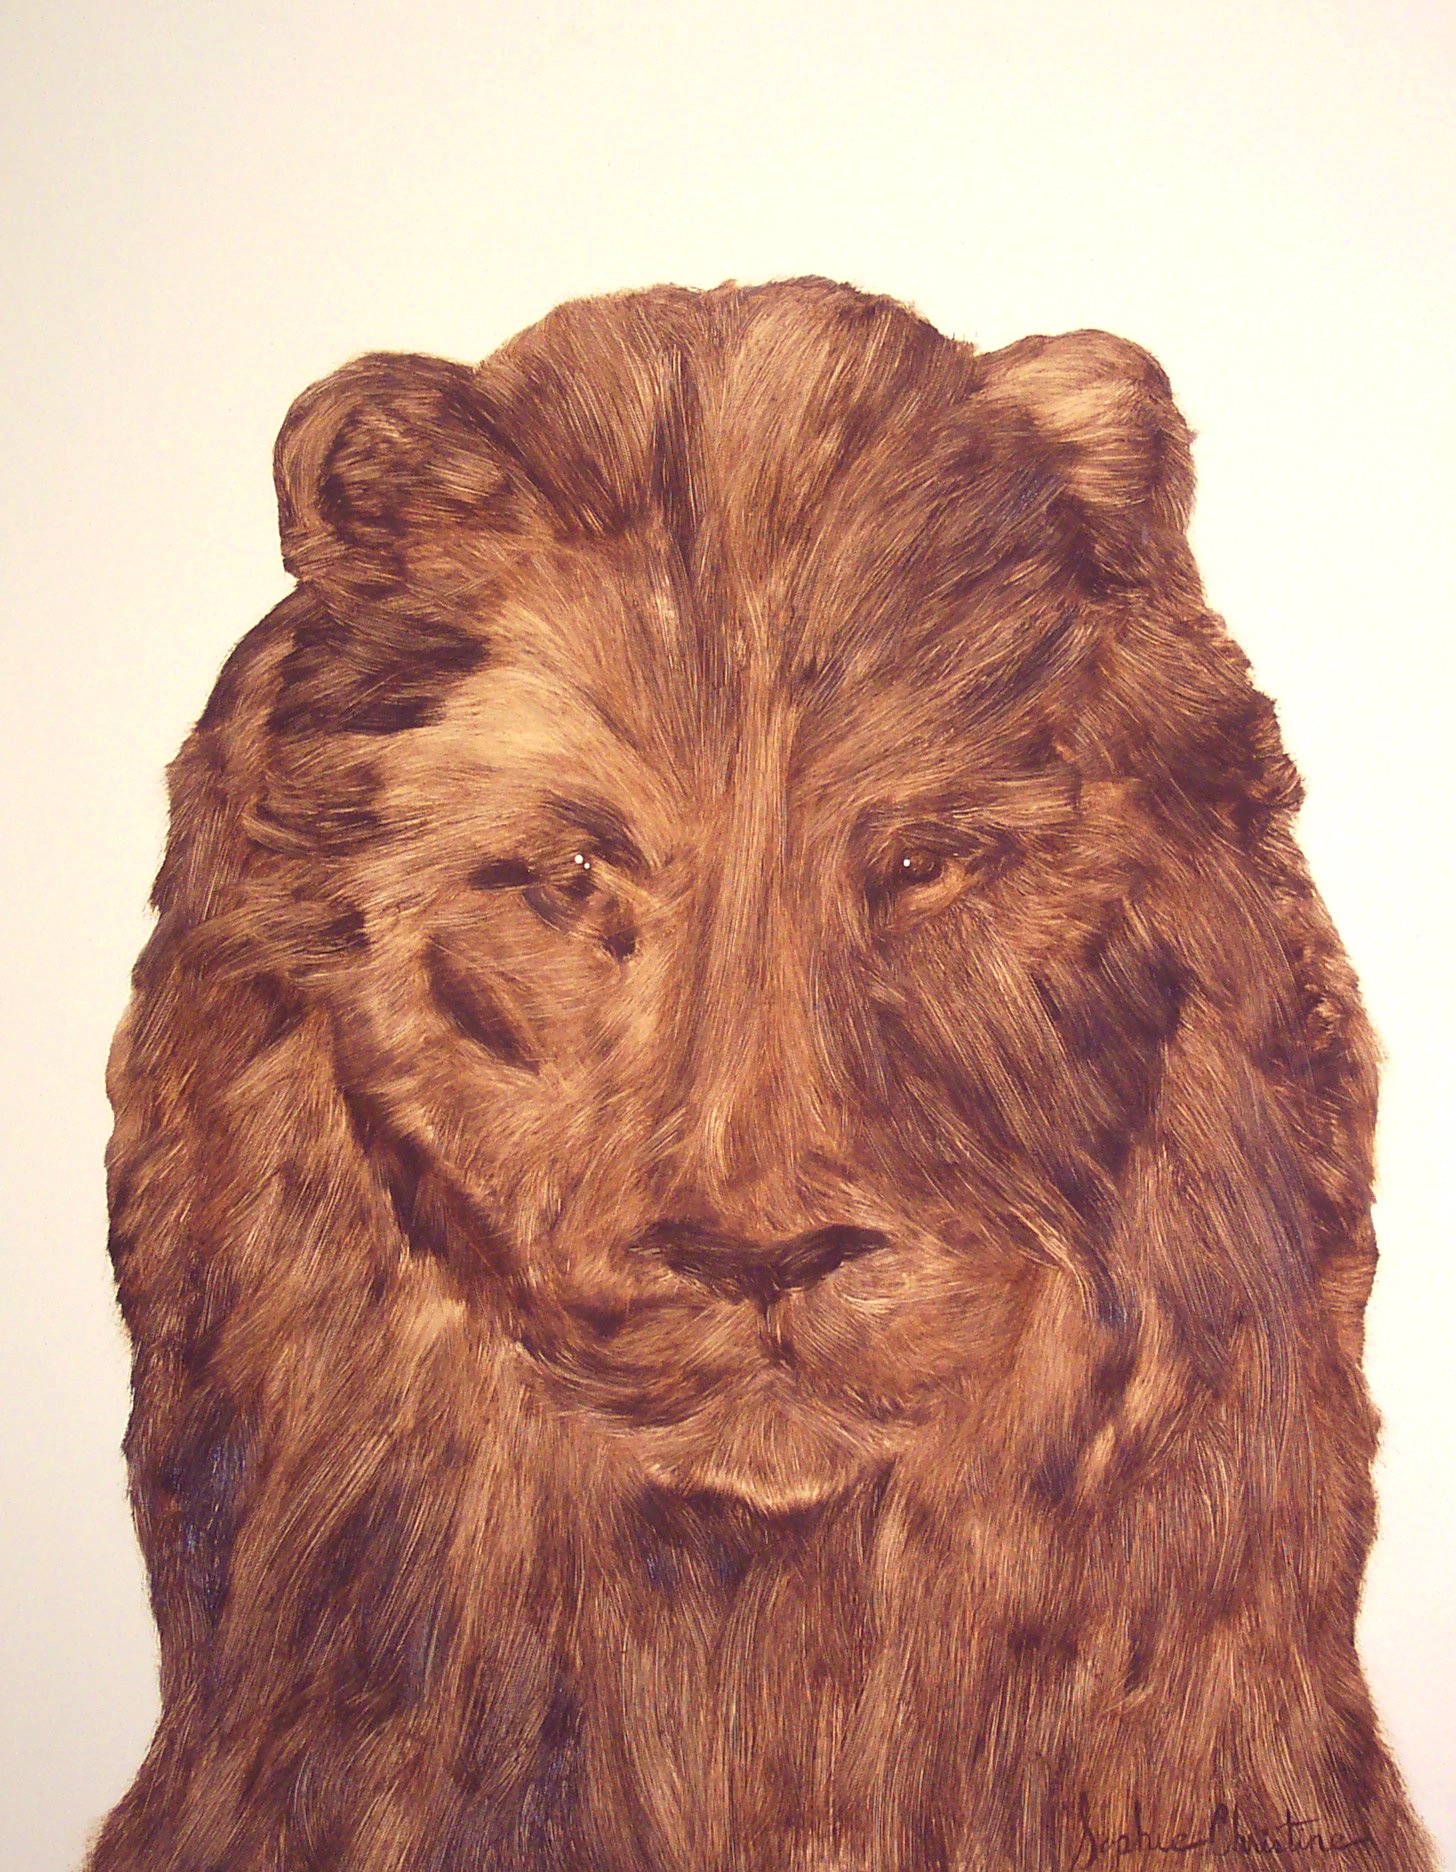 LION, 2004